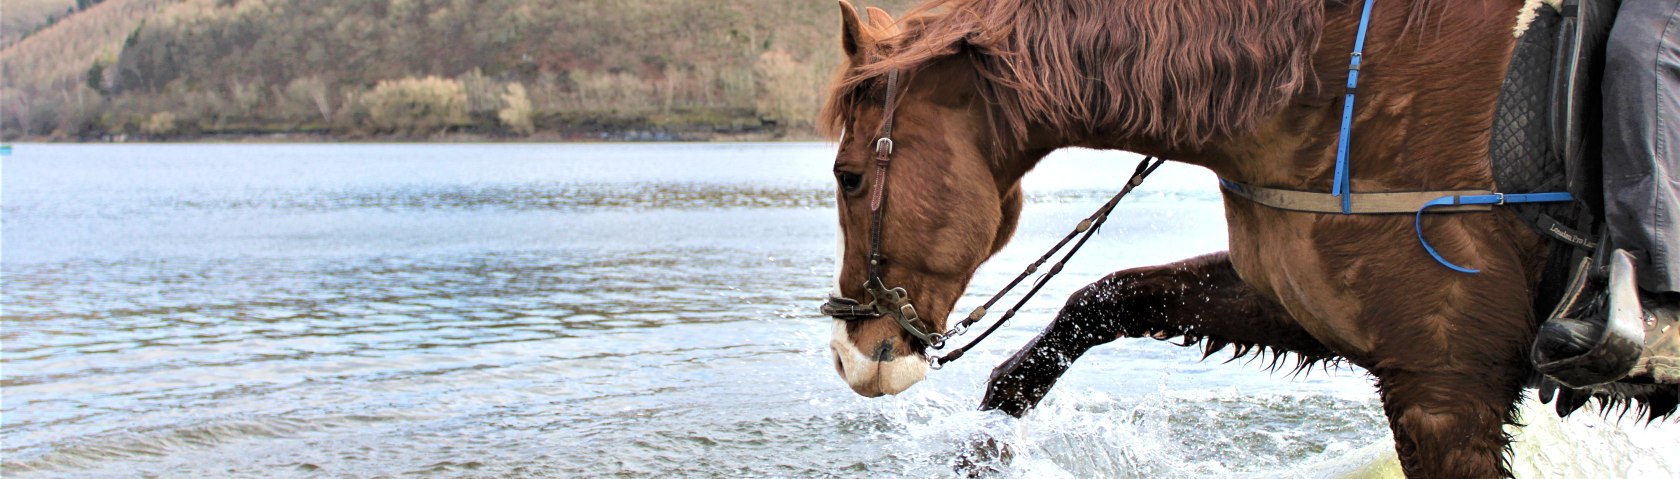 Pferd erfrischt sich im Rursee, © Rursee-Touristik / S.Herfort